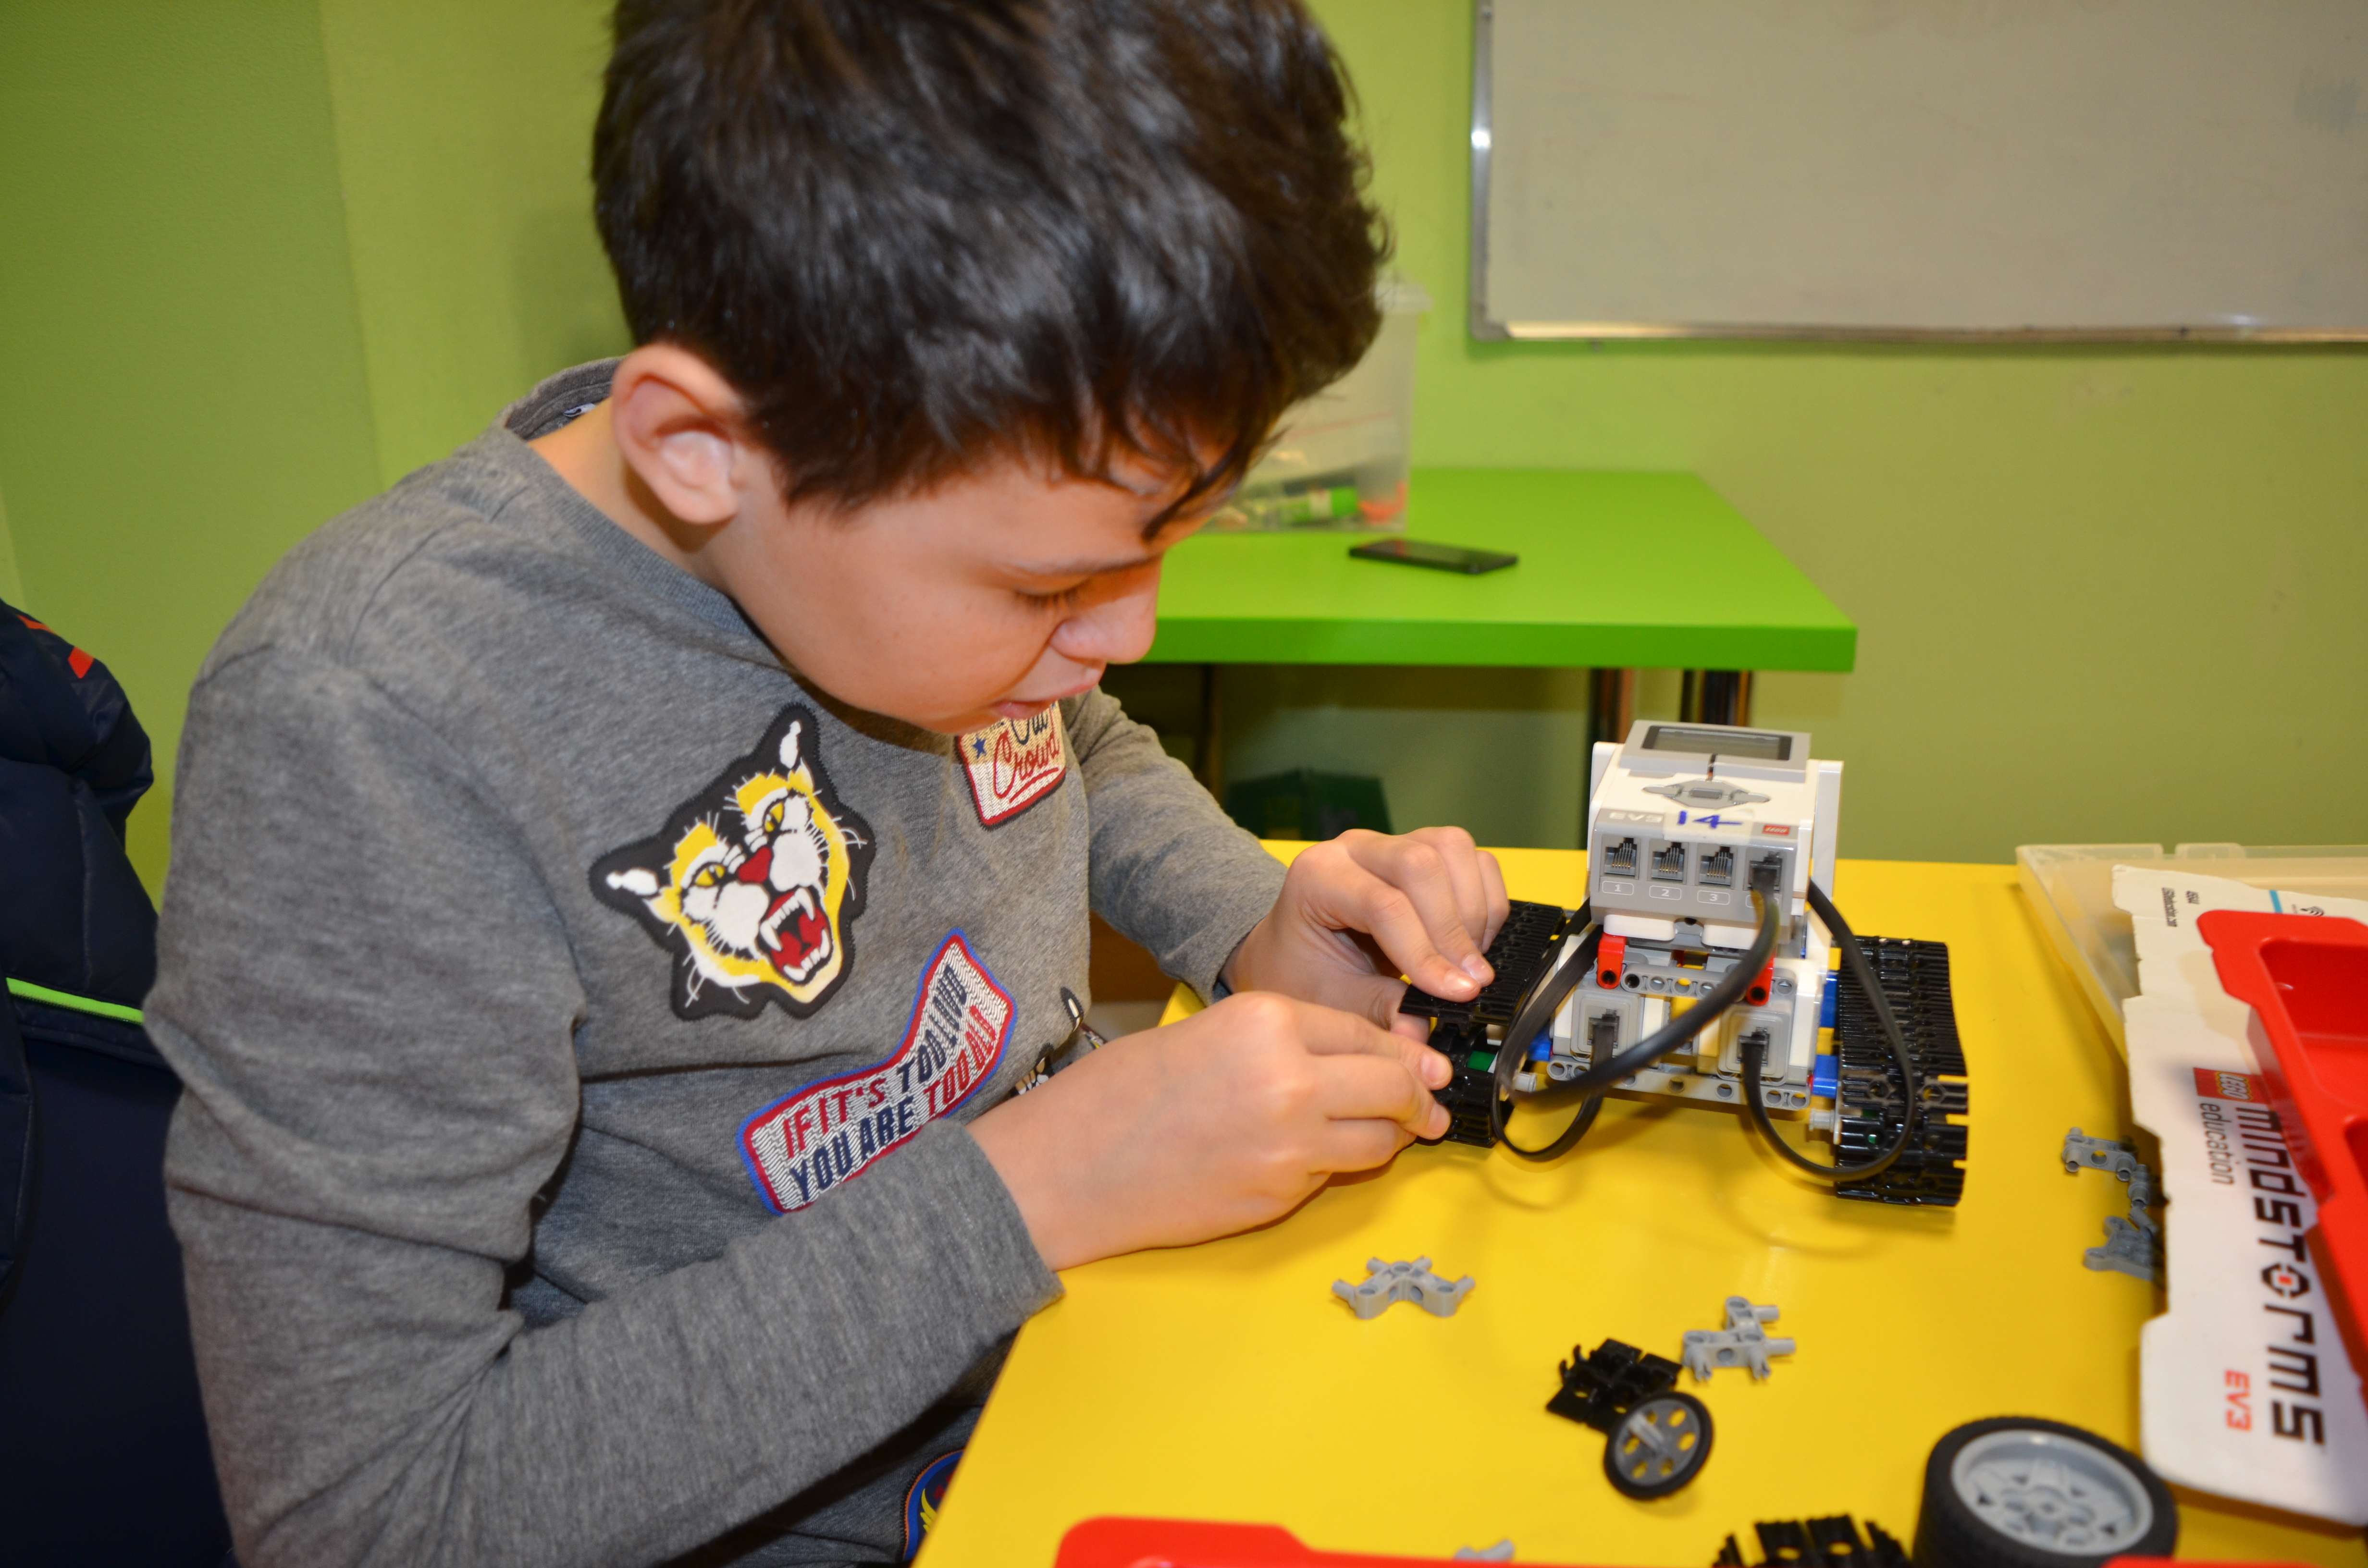 Робототехника и инженерия для детей 4-14 лет